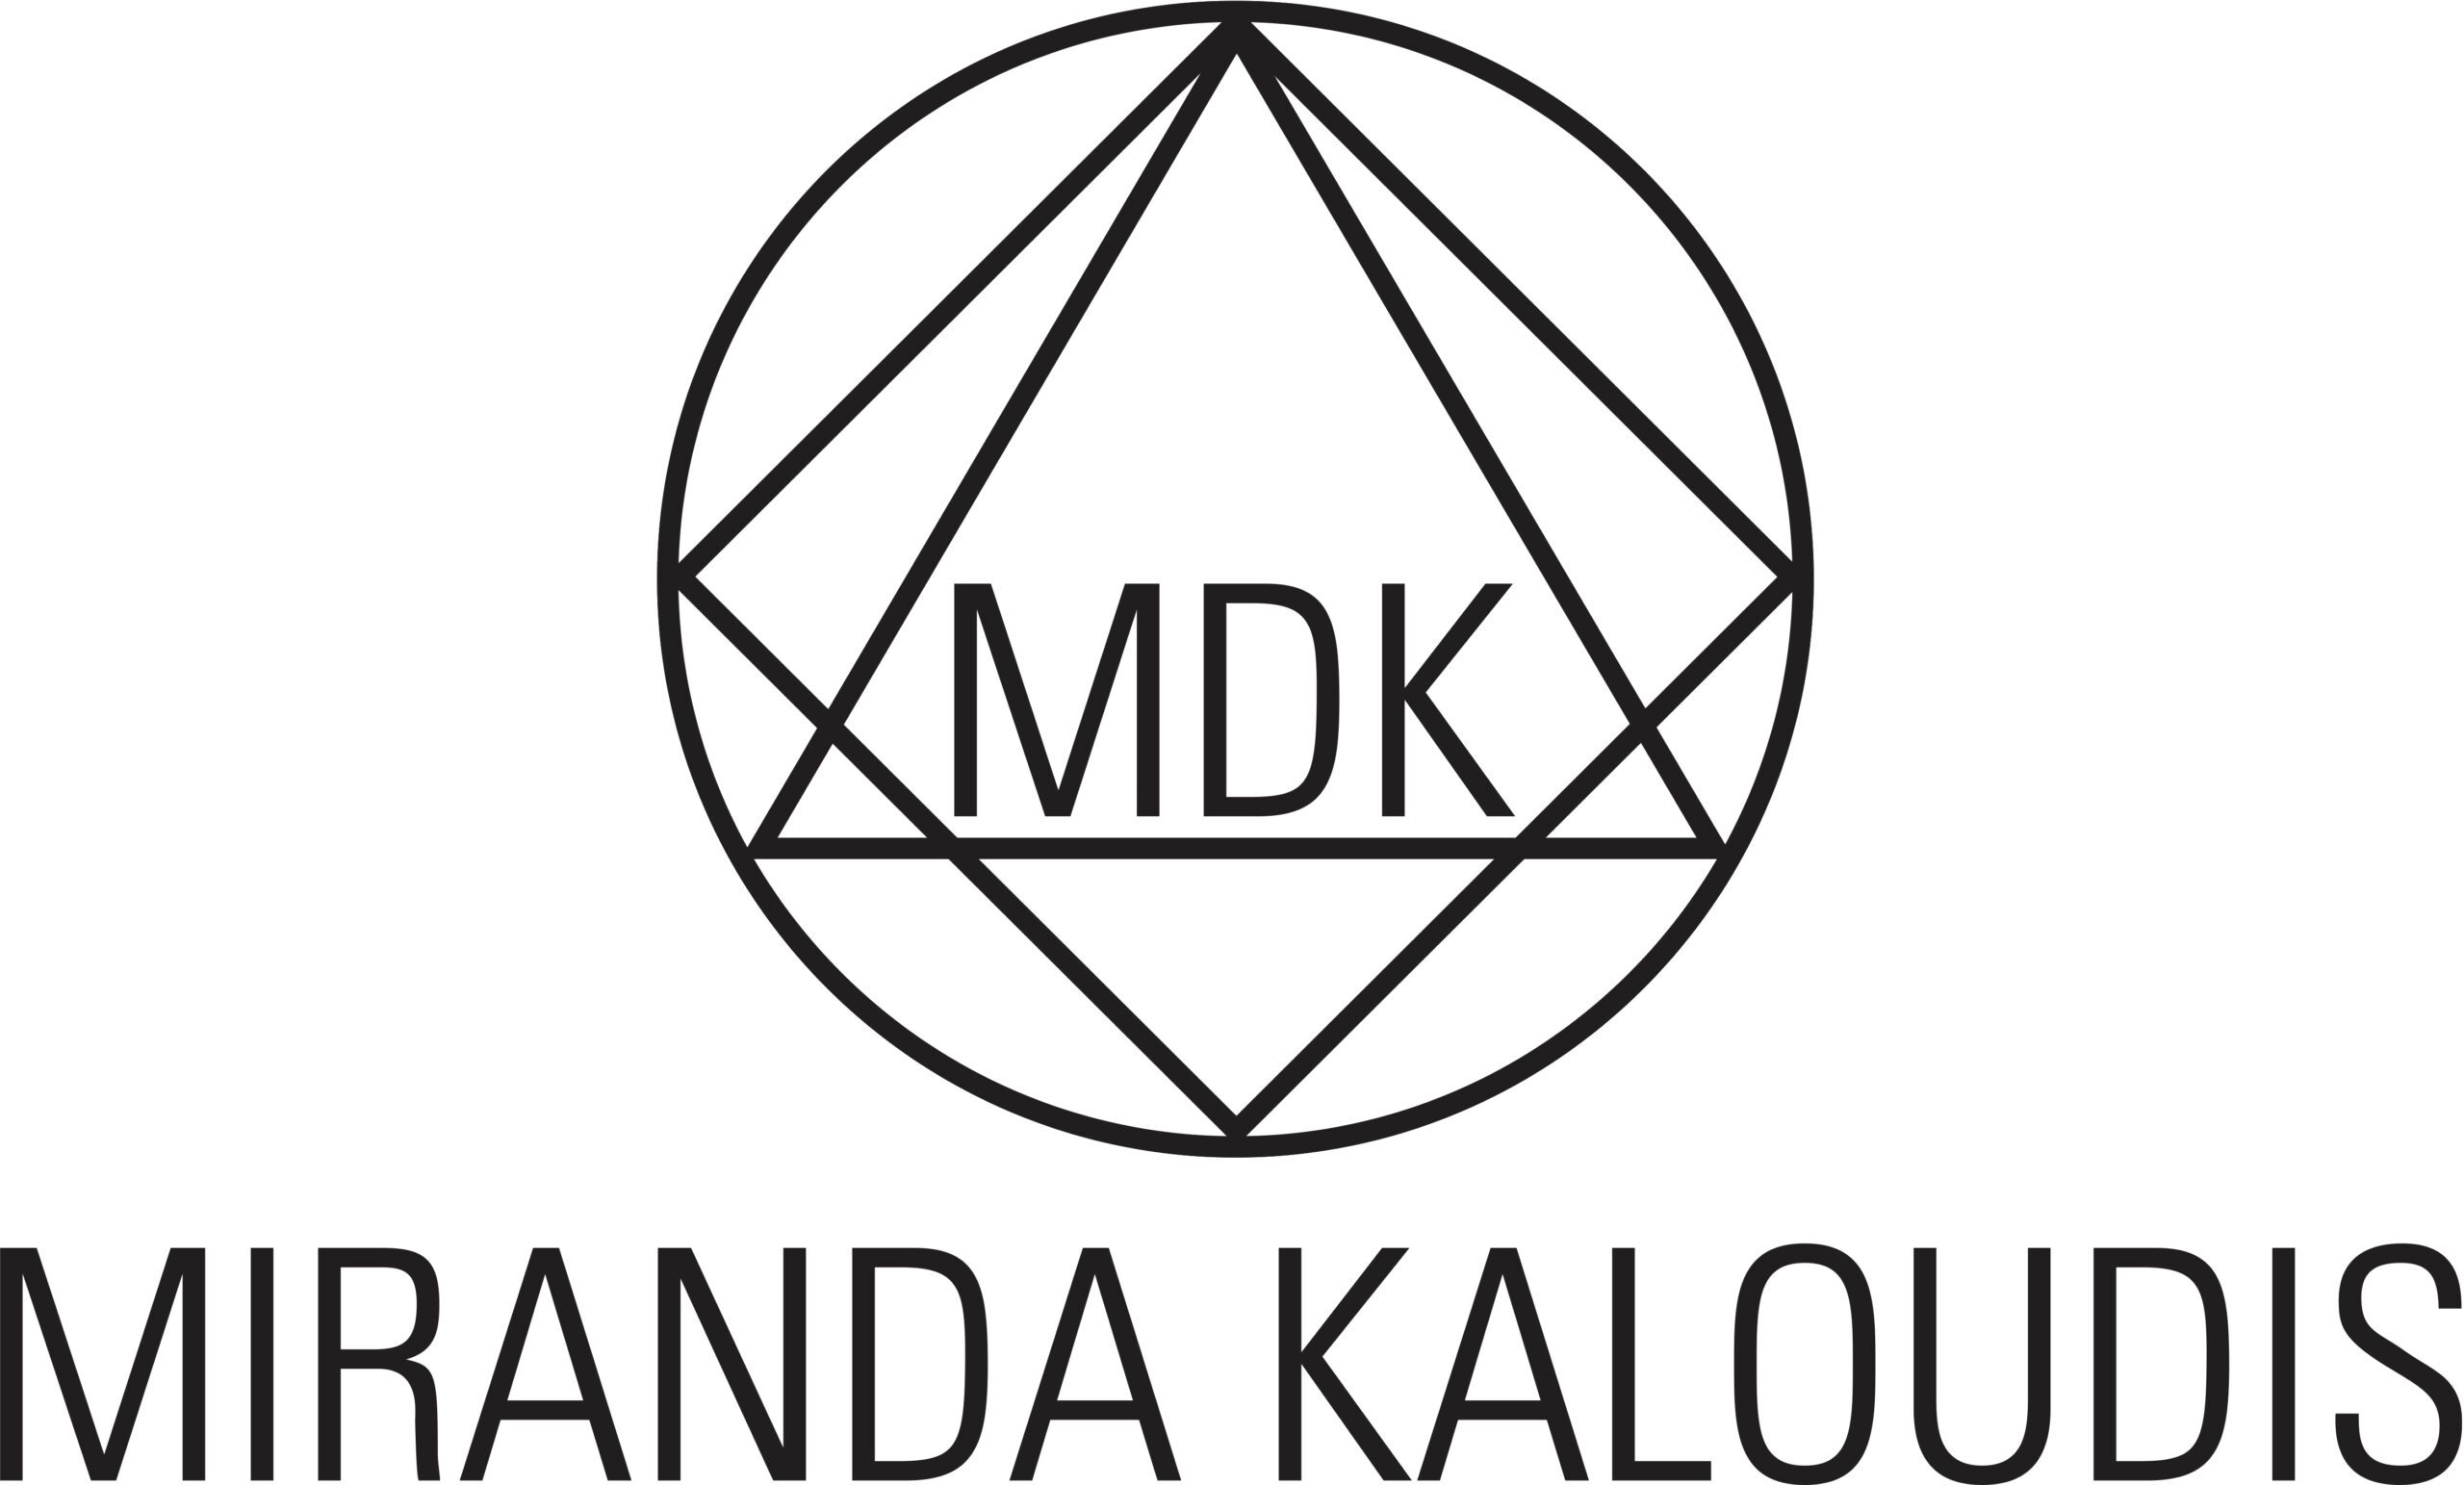 MDK – Miranda Kaloudis